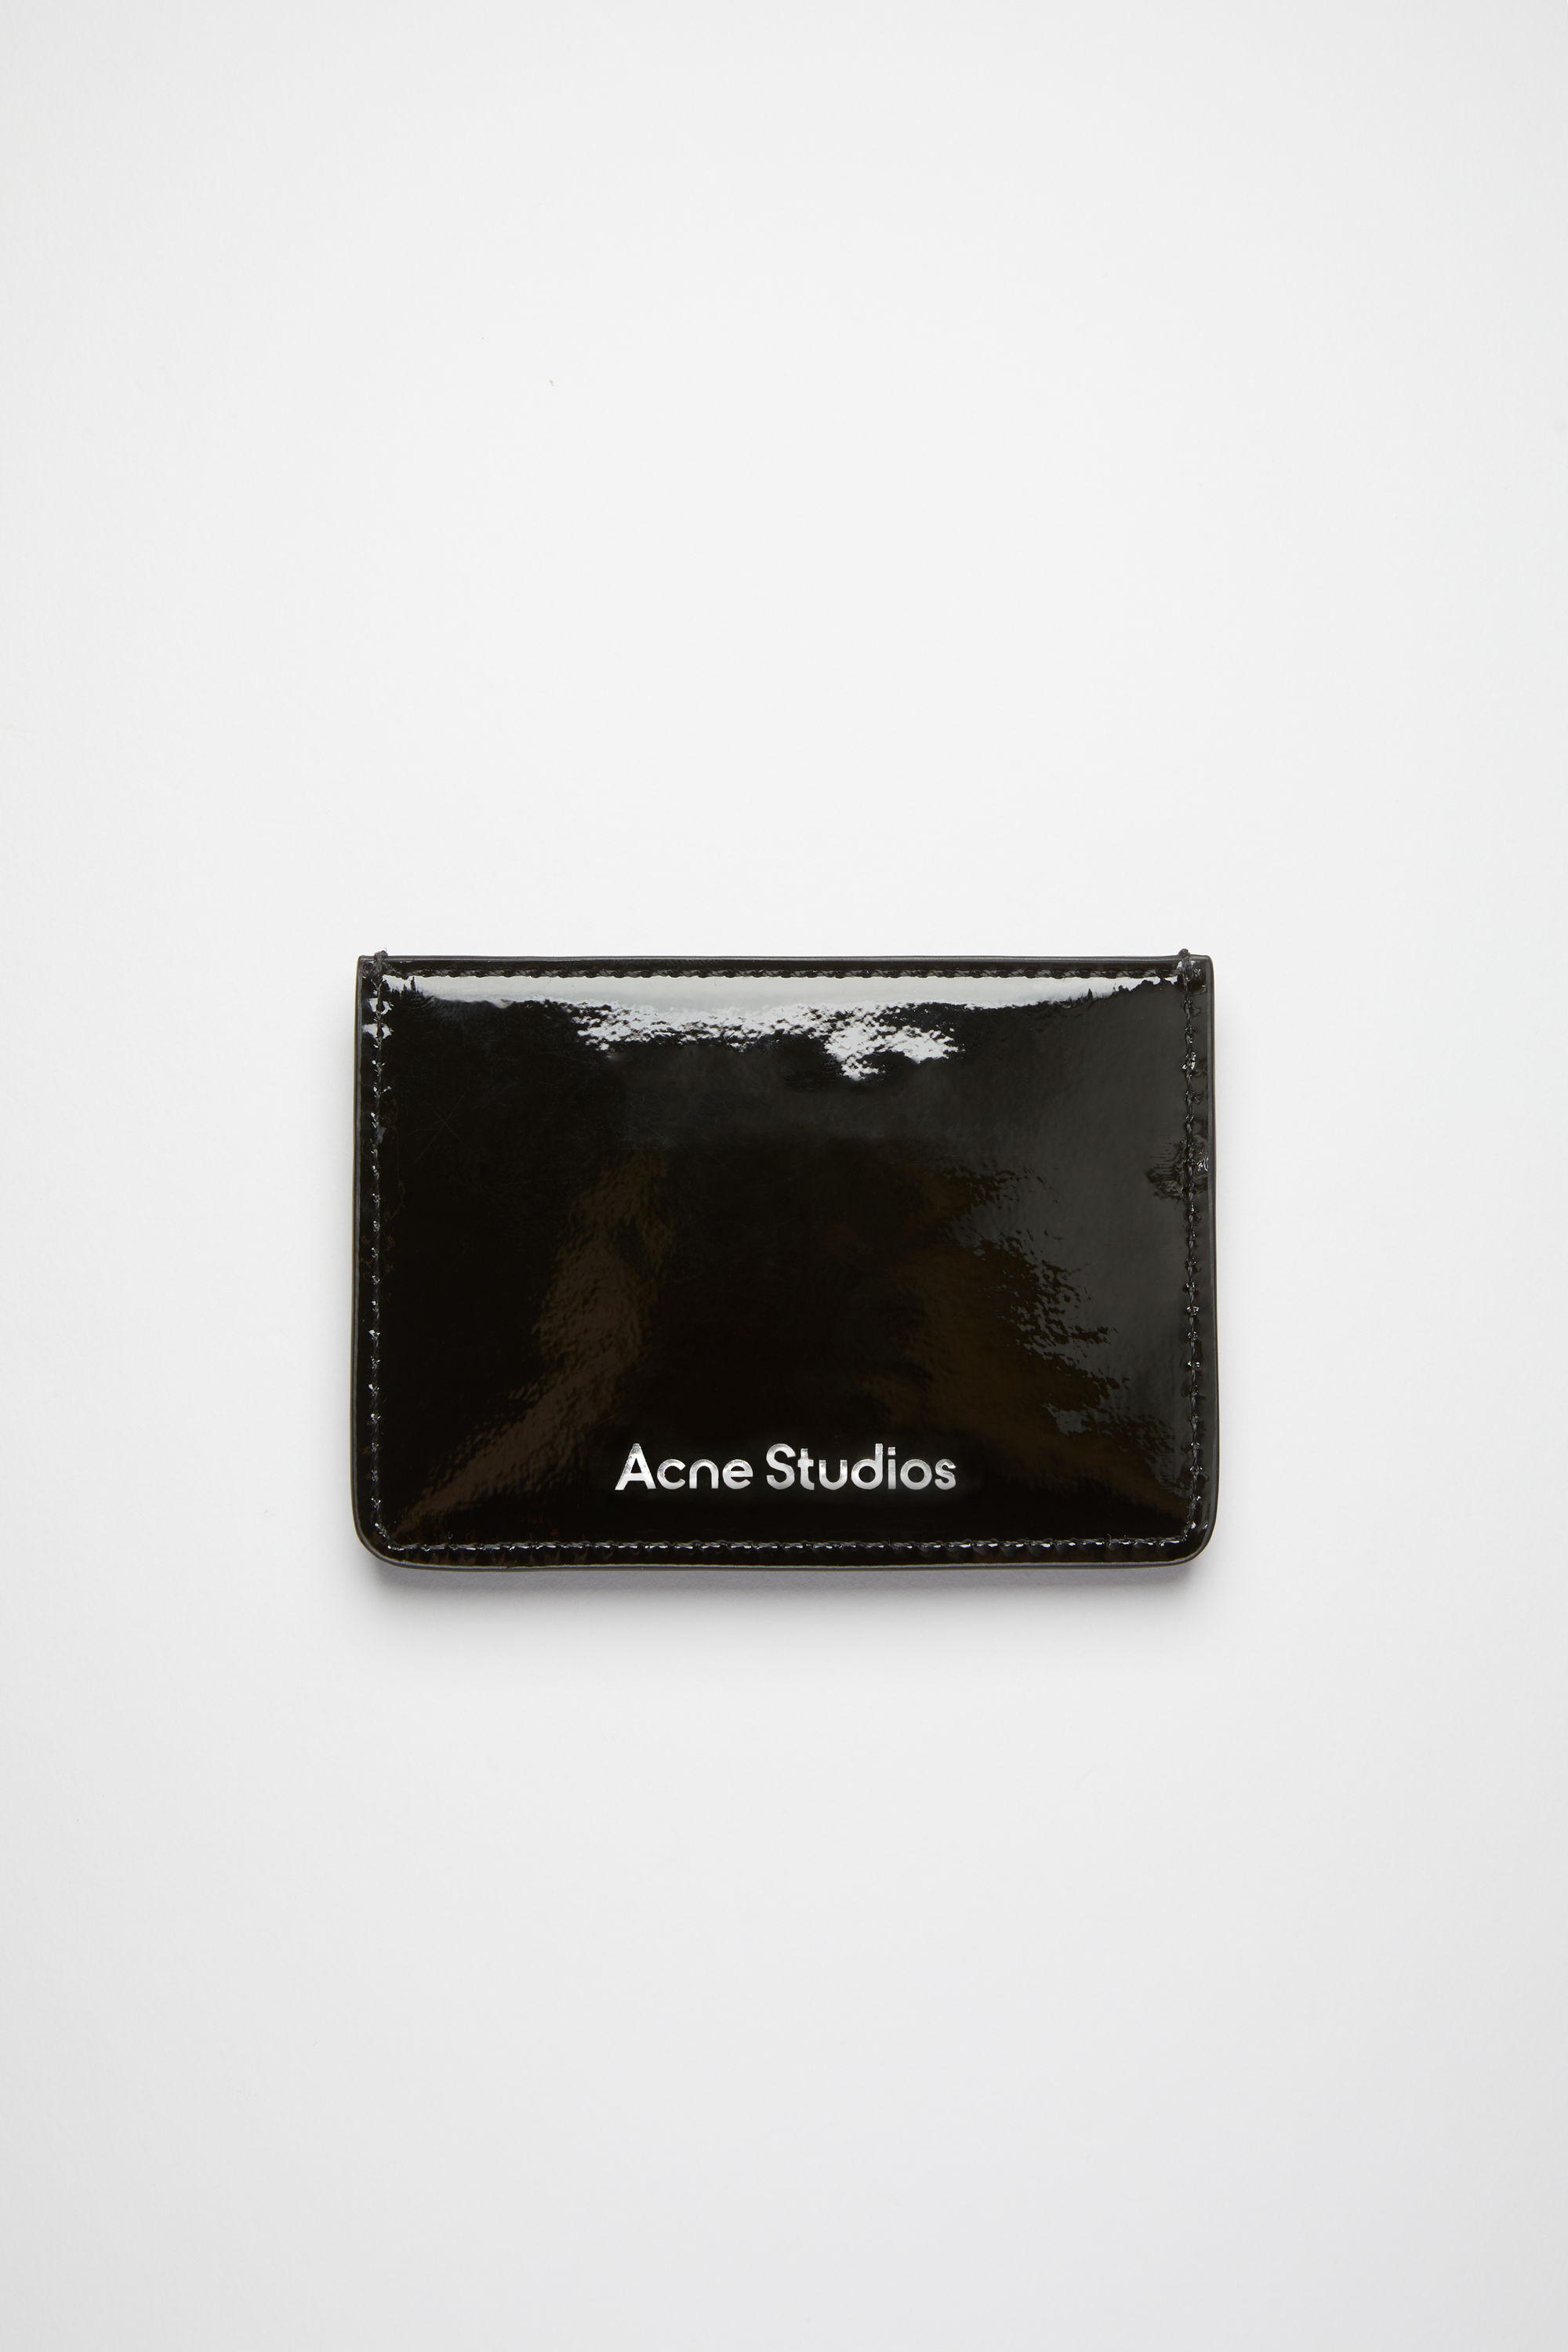 Acne Studios アクネストゥディオズ カードケース - 黒